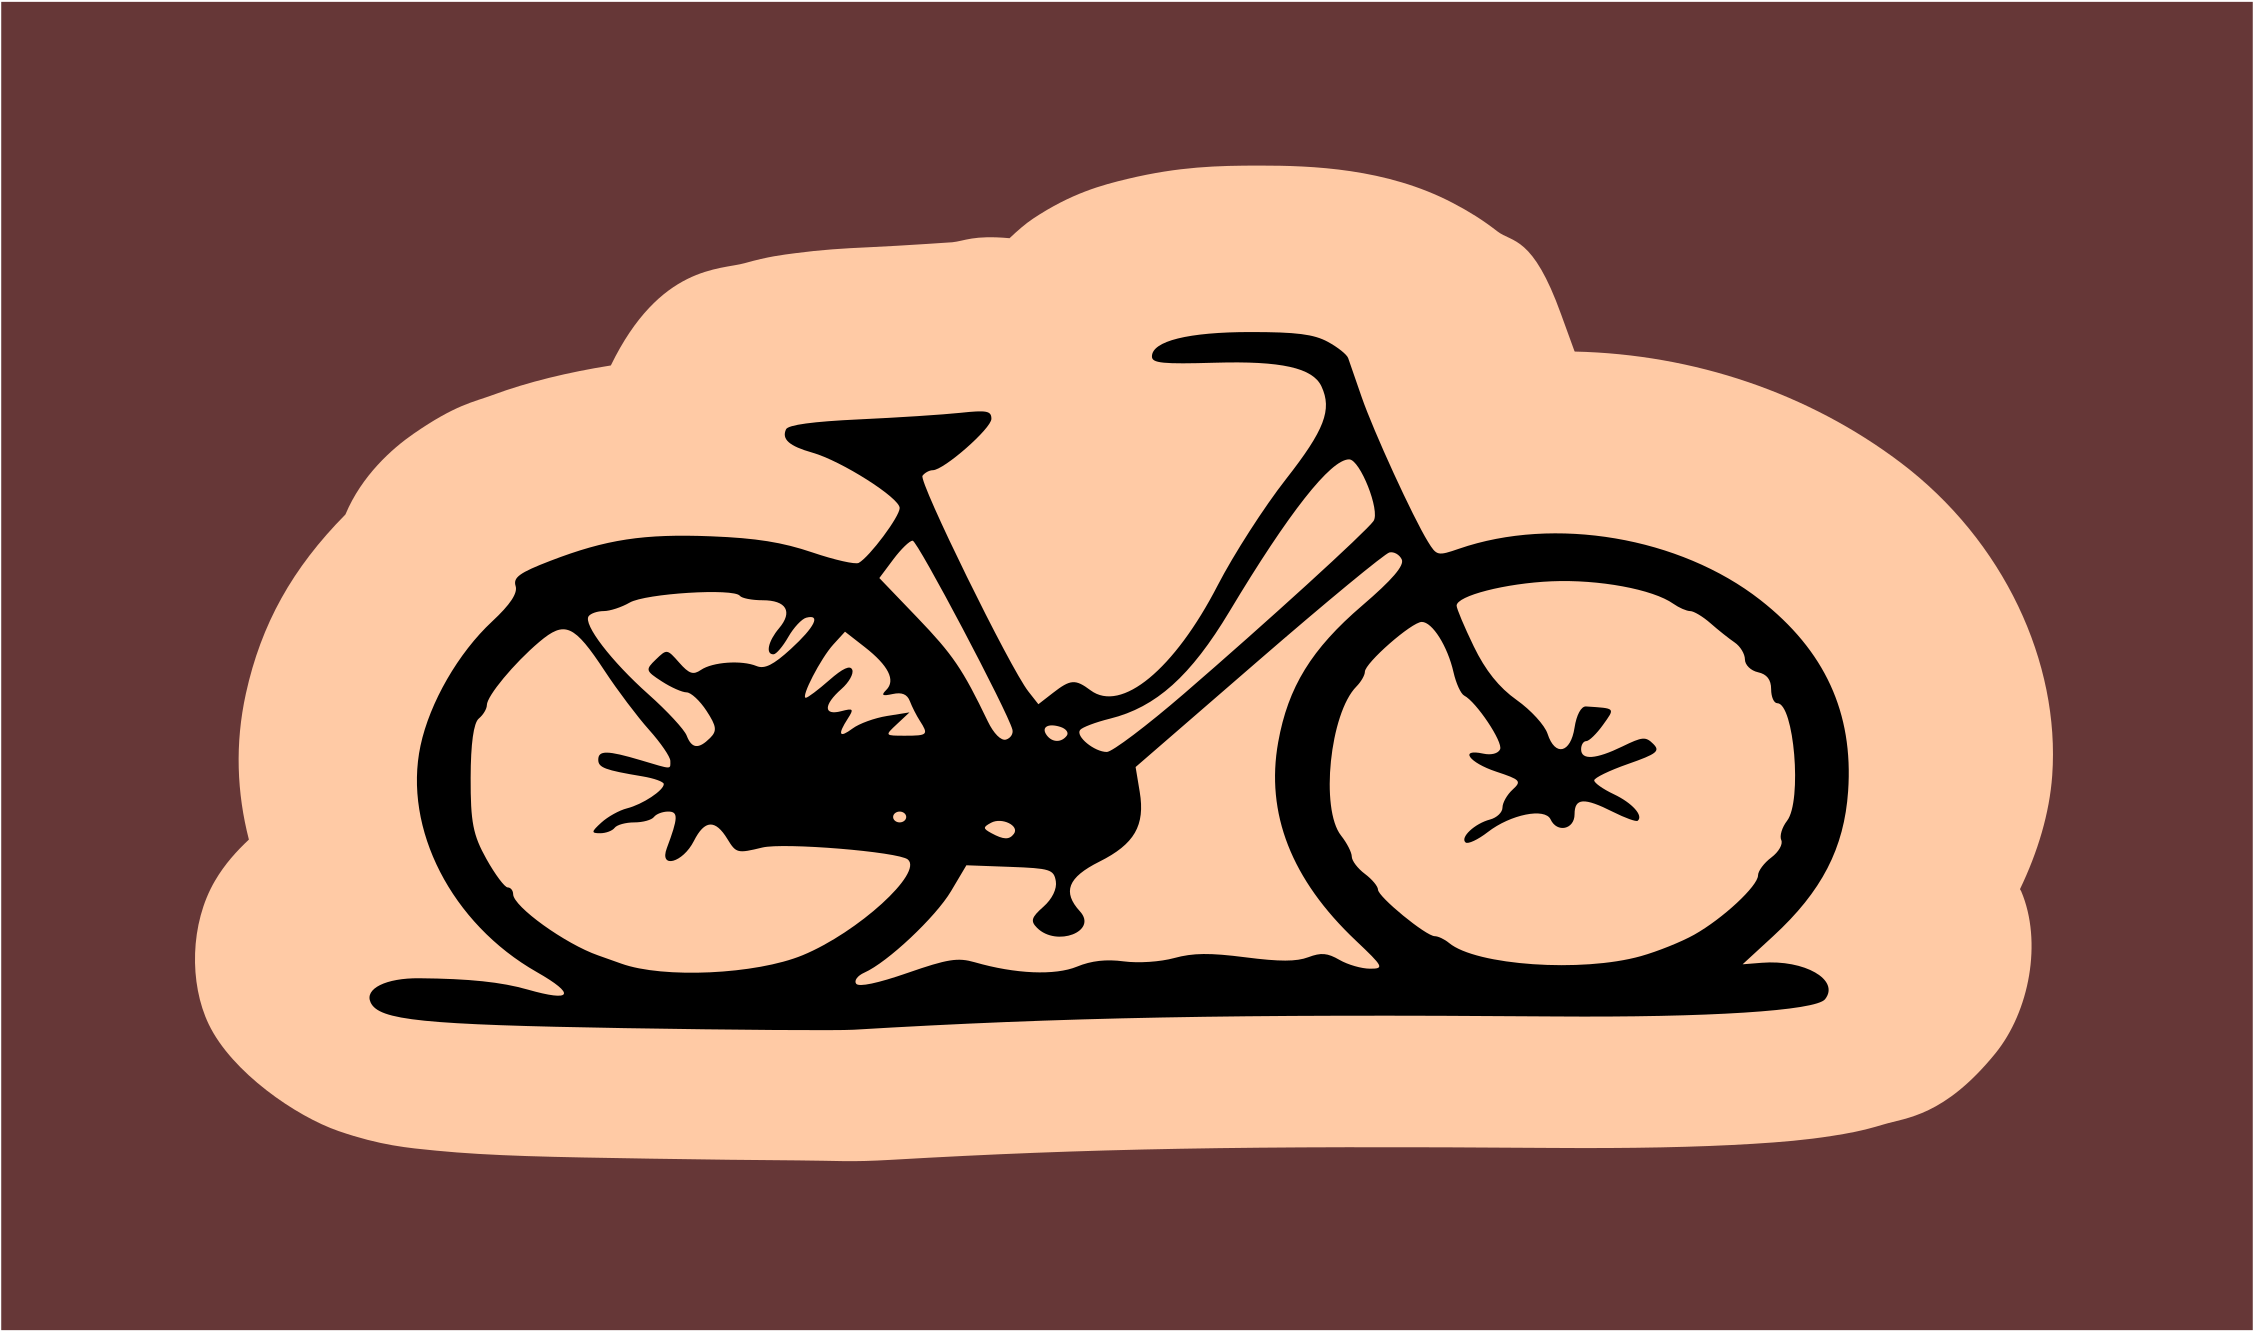 Bicycle 01 - Black Beach Cruiser Bike (2400x1520)